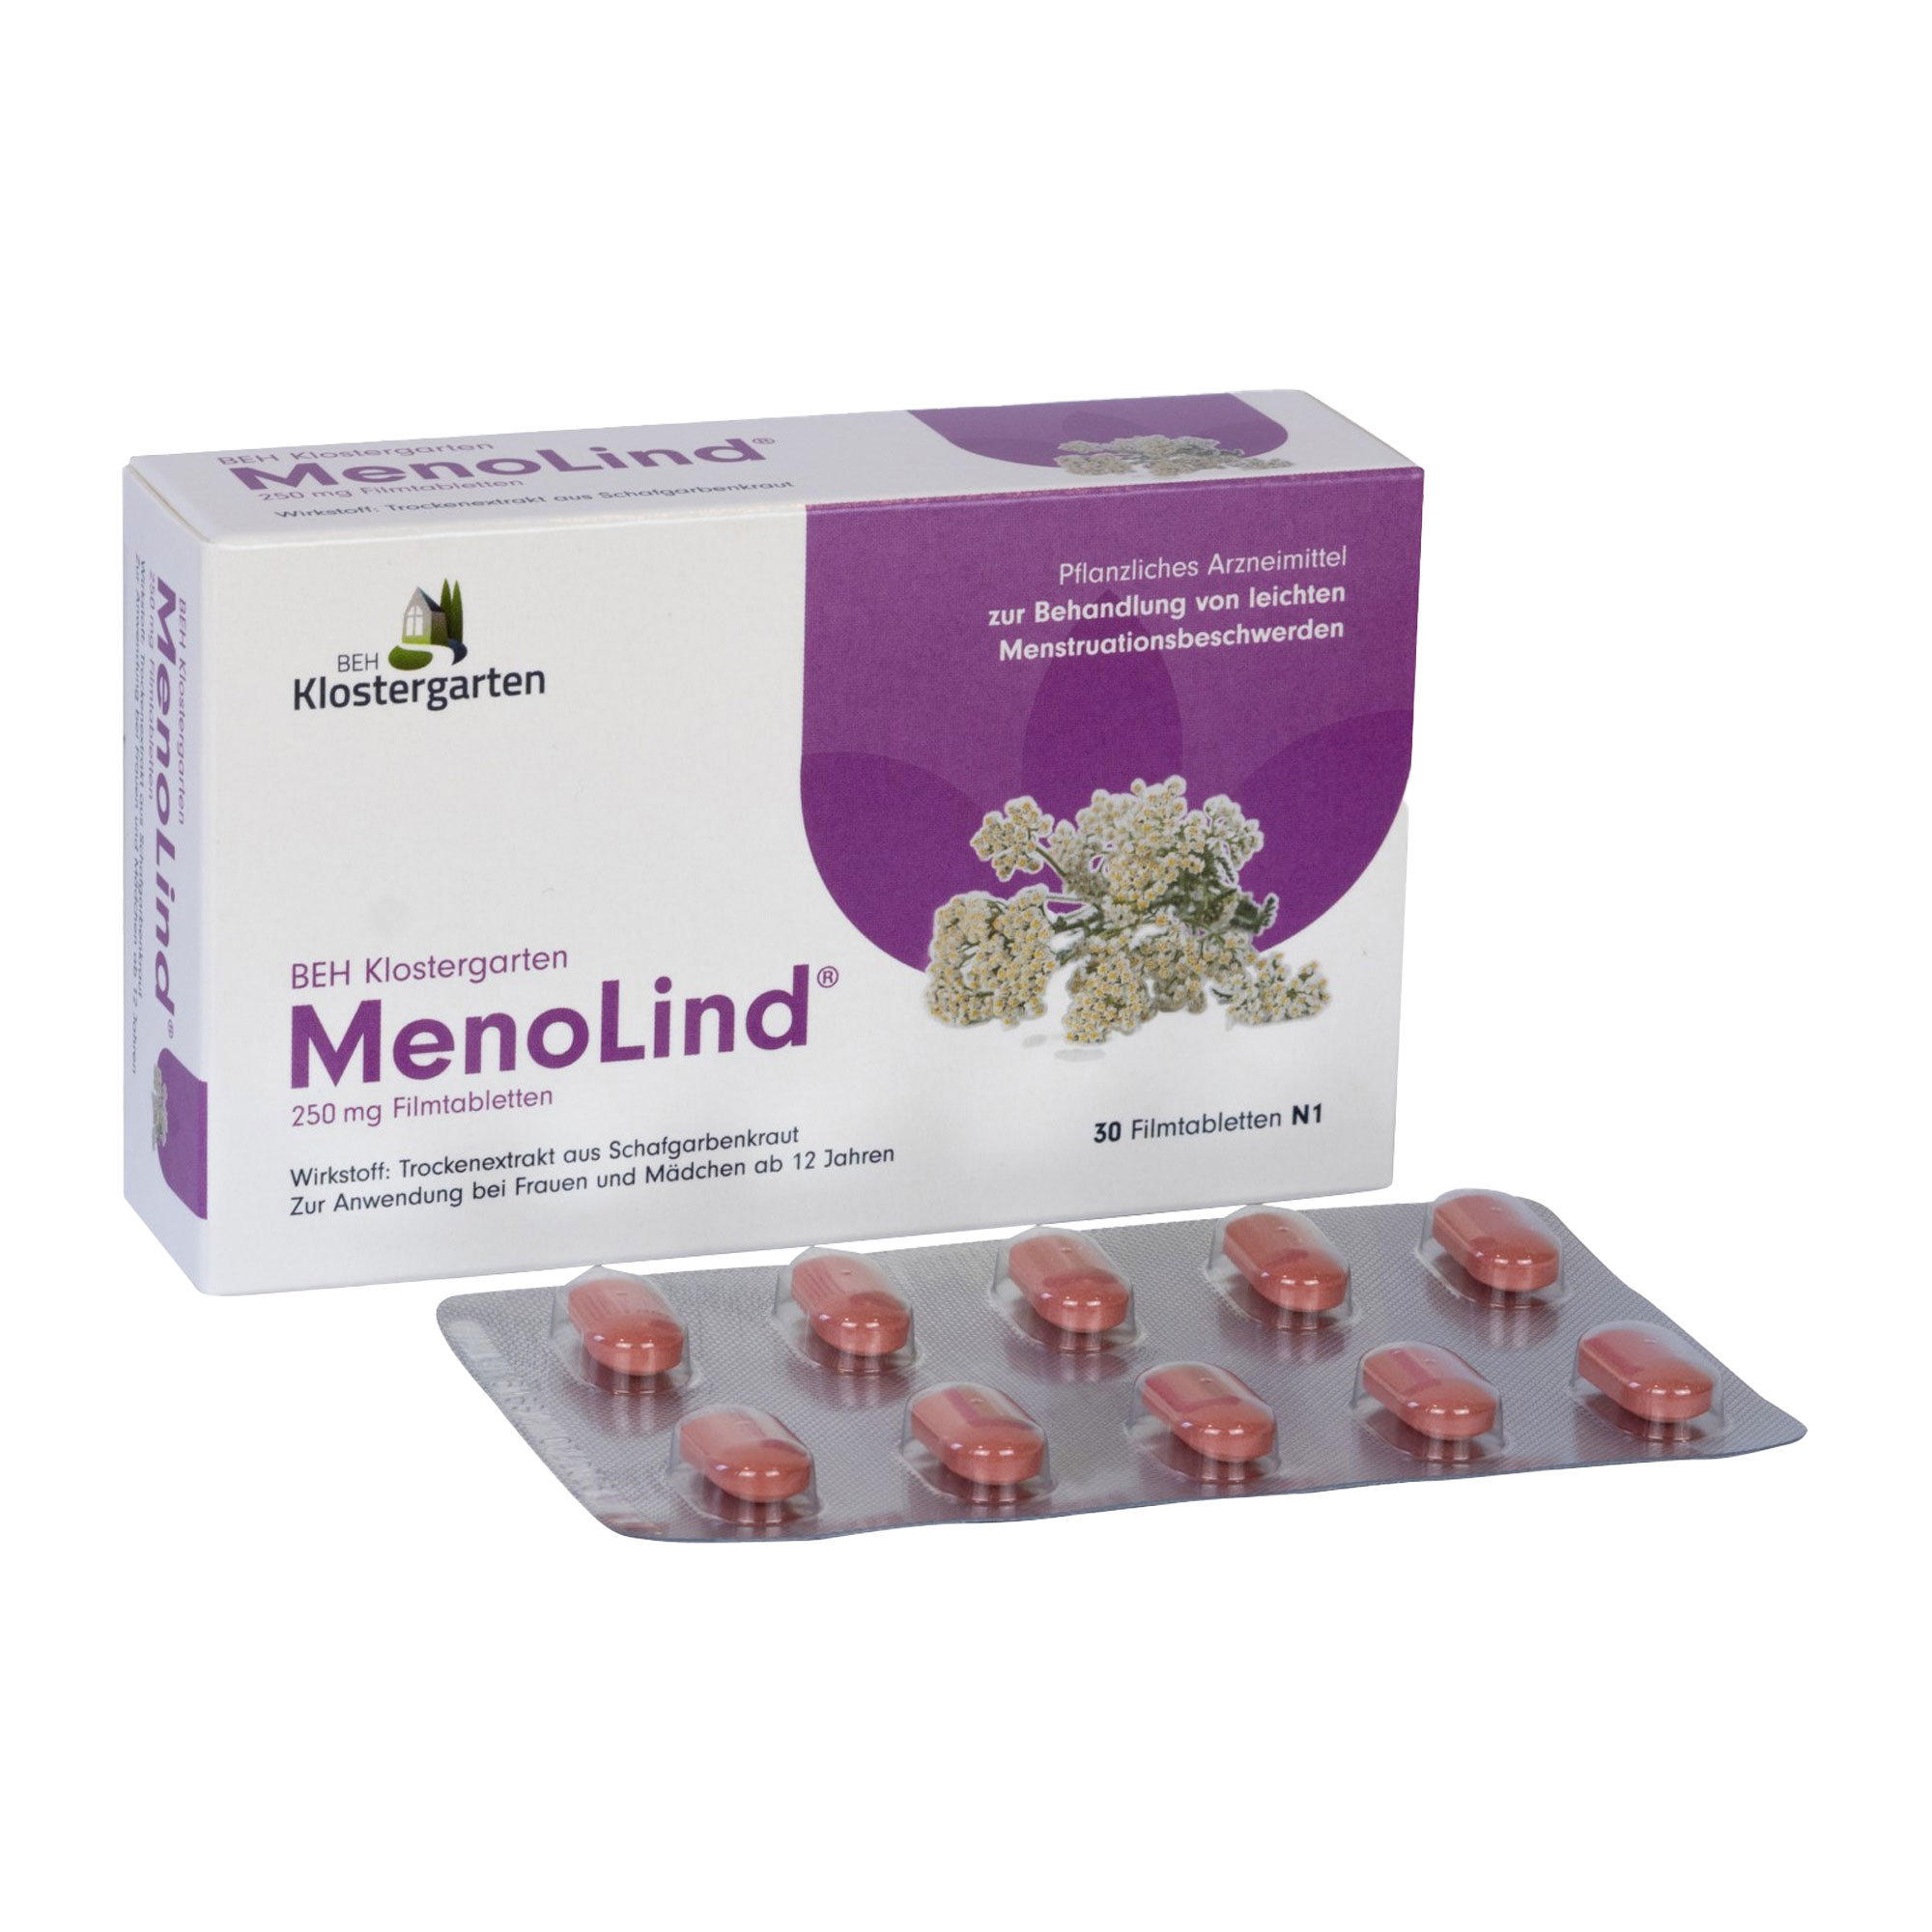 Pflanzliches Arzneimittel zur Anwendung bei Menstruationsbeschwerden. Für Mädchen ab 12 Jahren und Frauen.